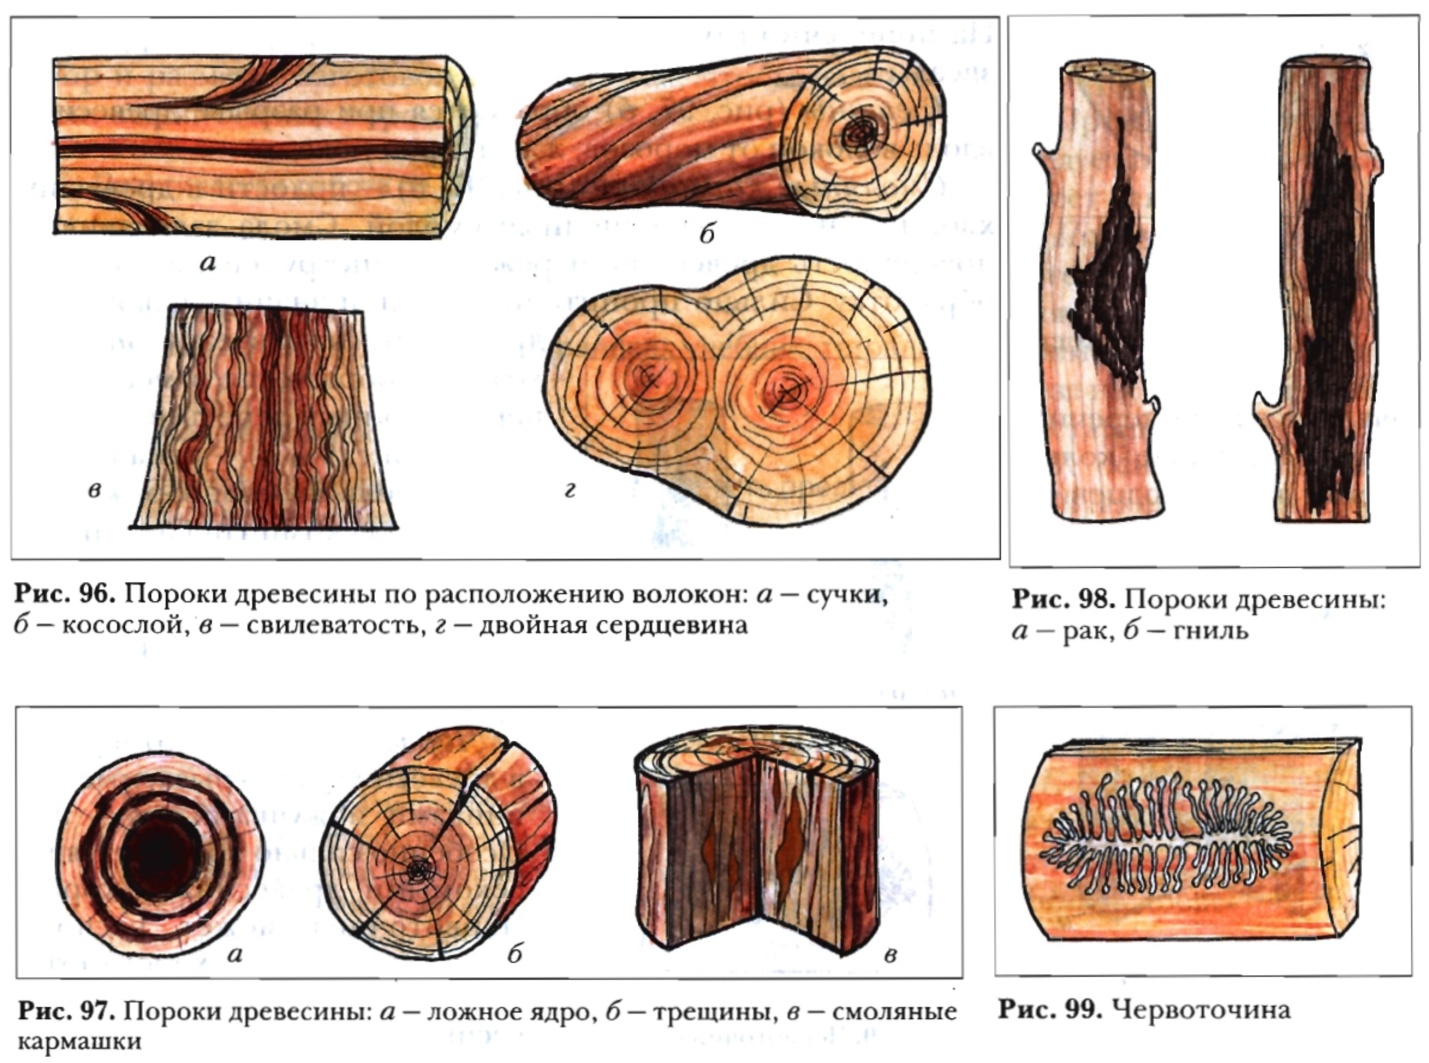 как можно использовать пороки древесины